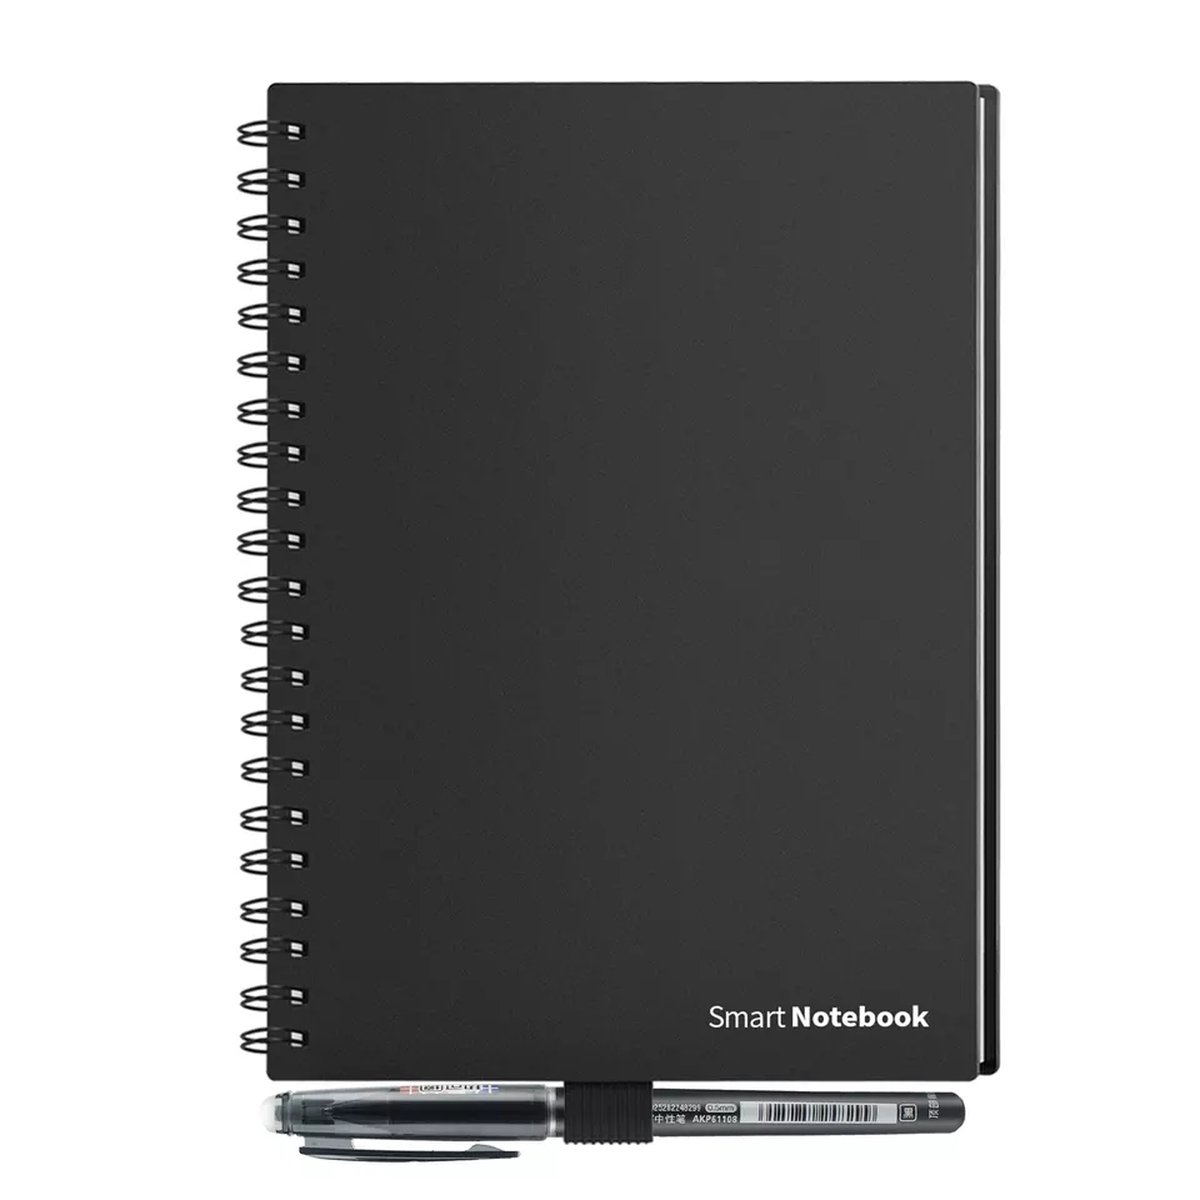 Smart Notebook - Herschrijfbare notitieboek - uitwisbaar - herbruikbaar schrift A5